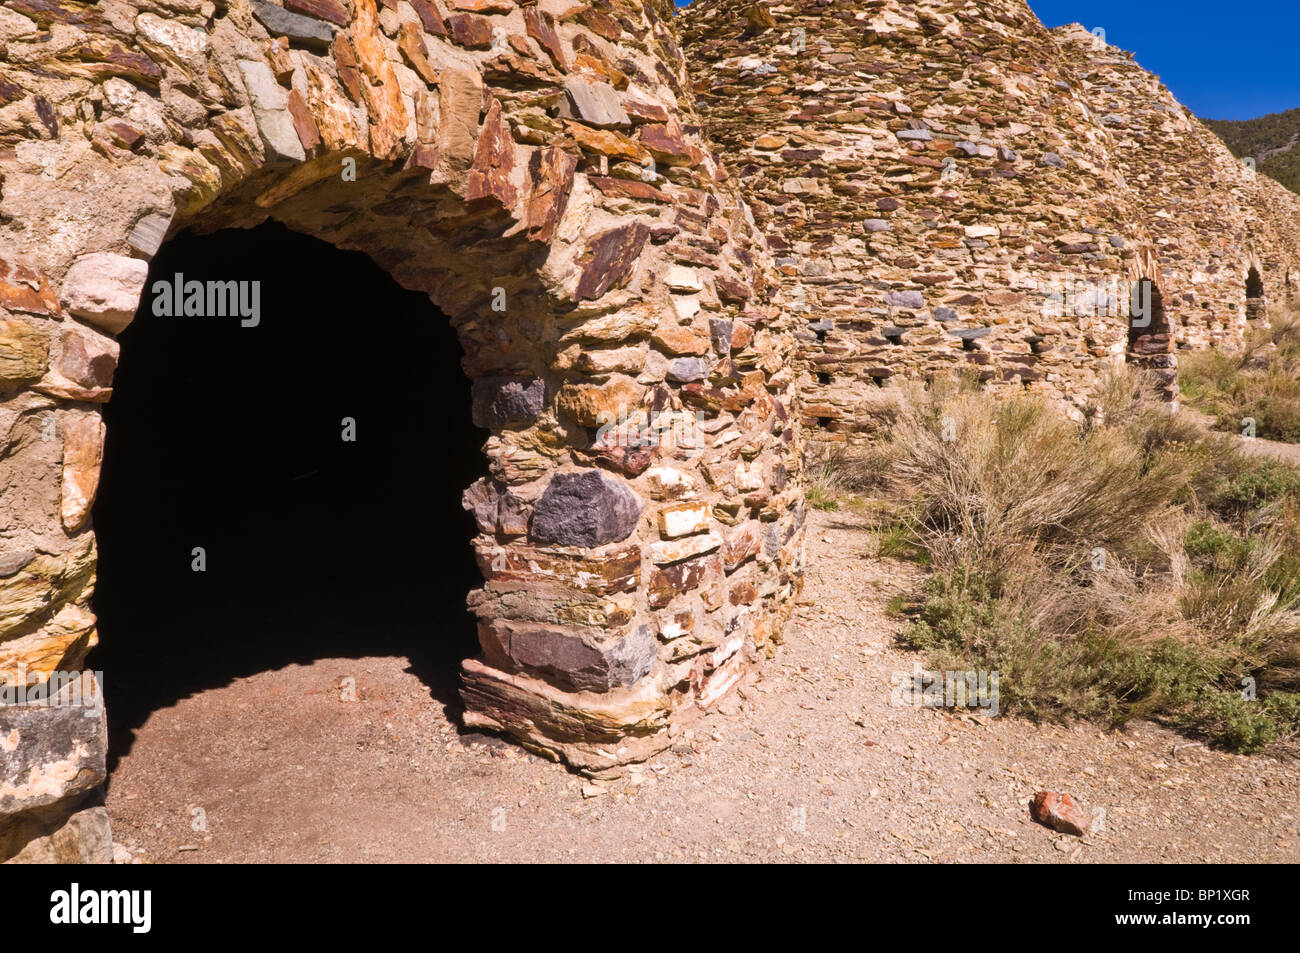 Les fours à charbon de Wildrose, Death Valley National Park. Californie Banque D'Images